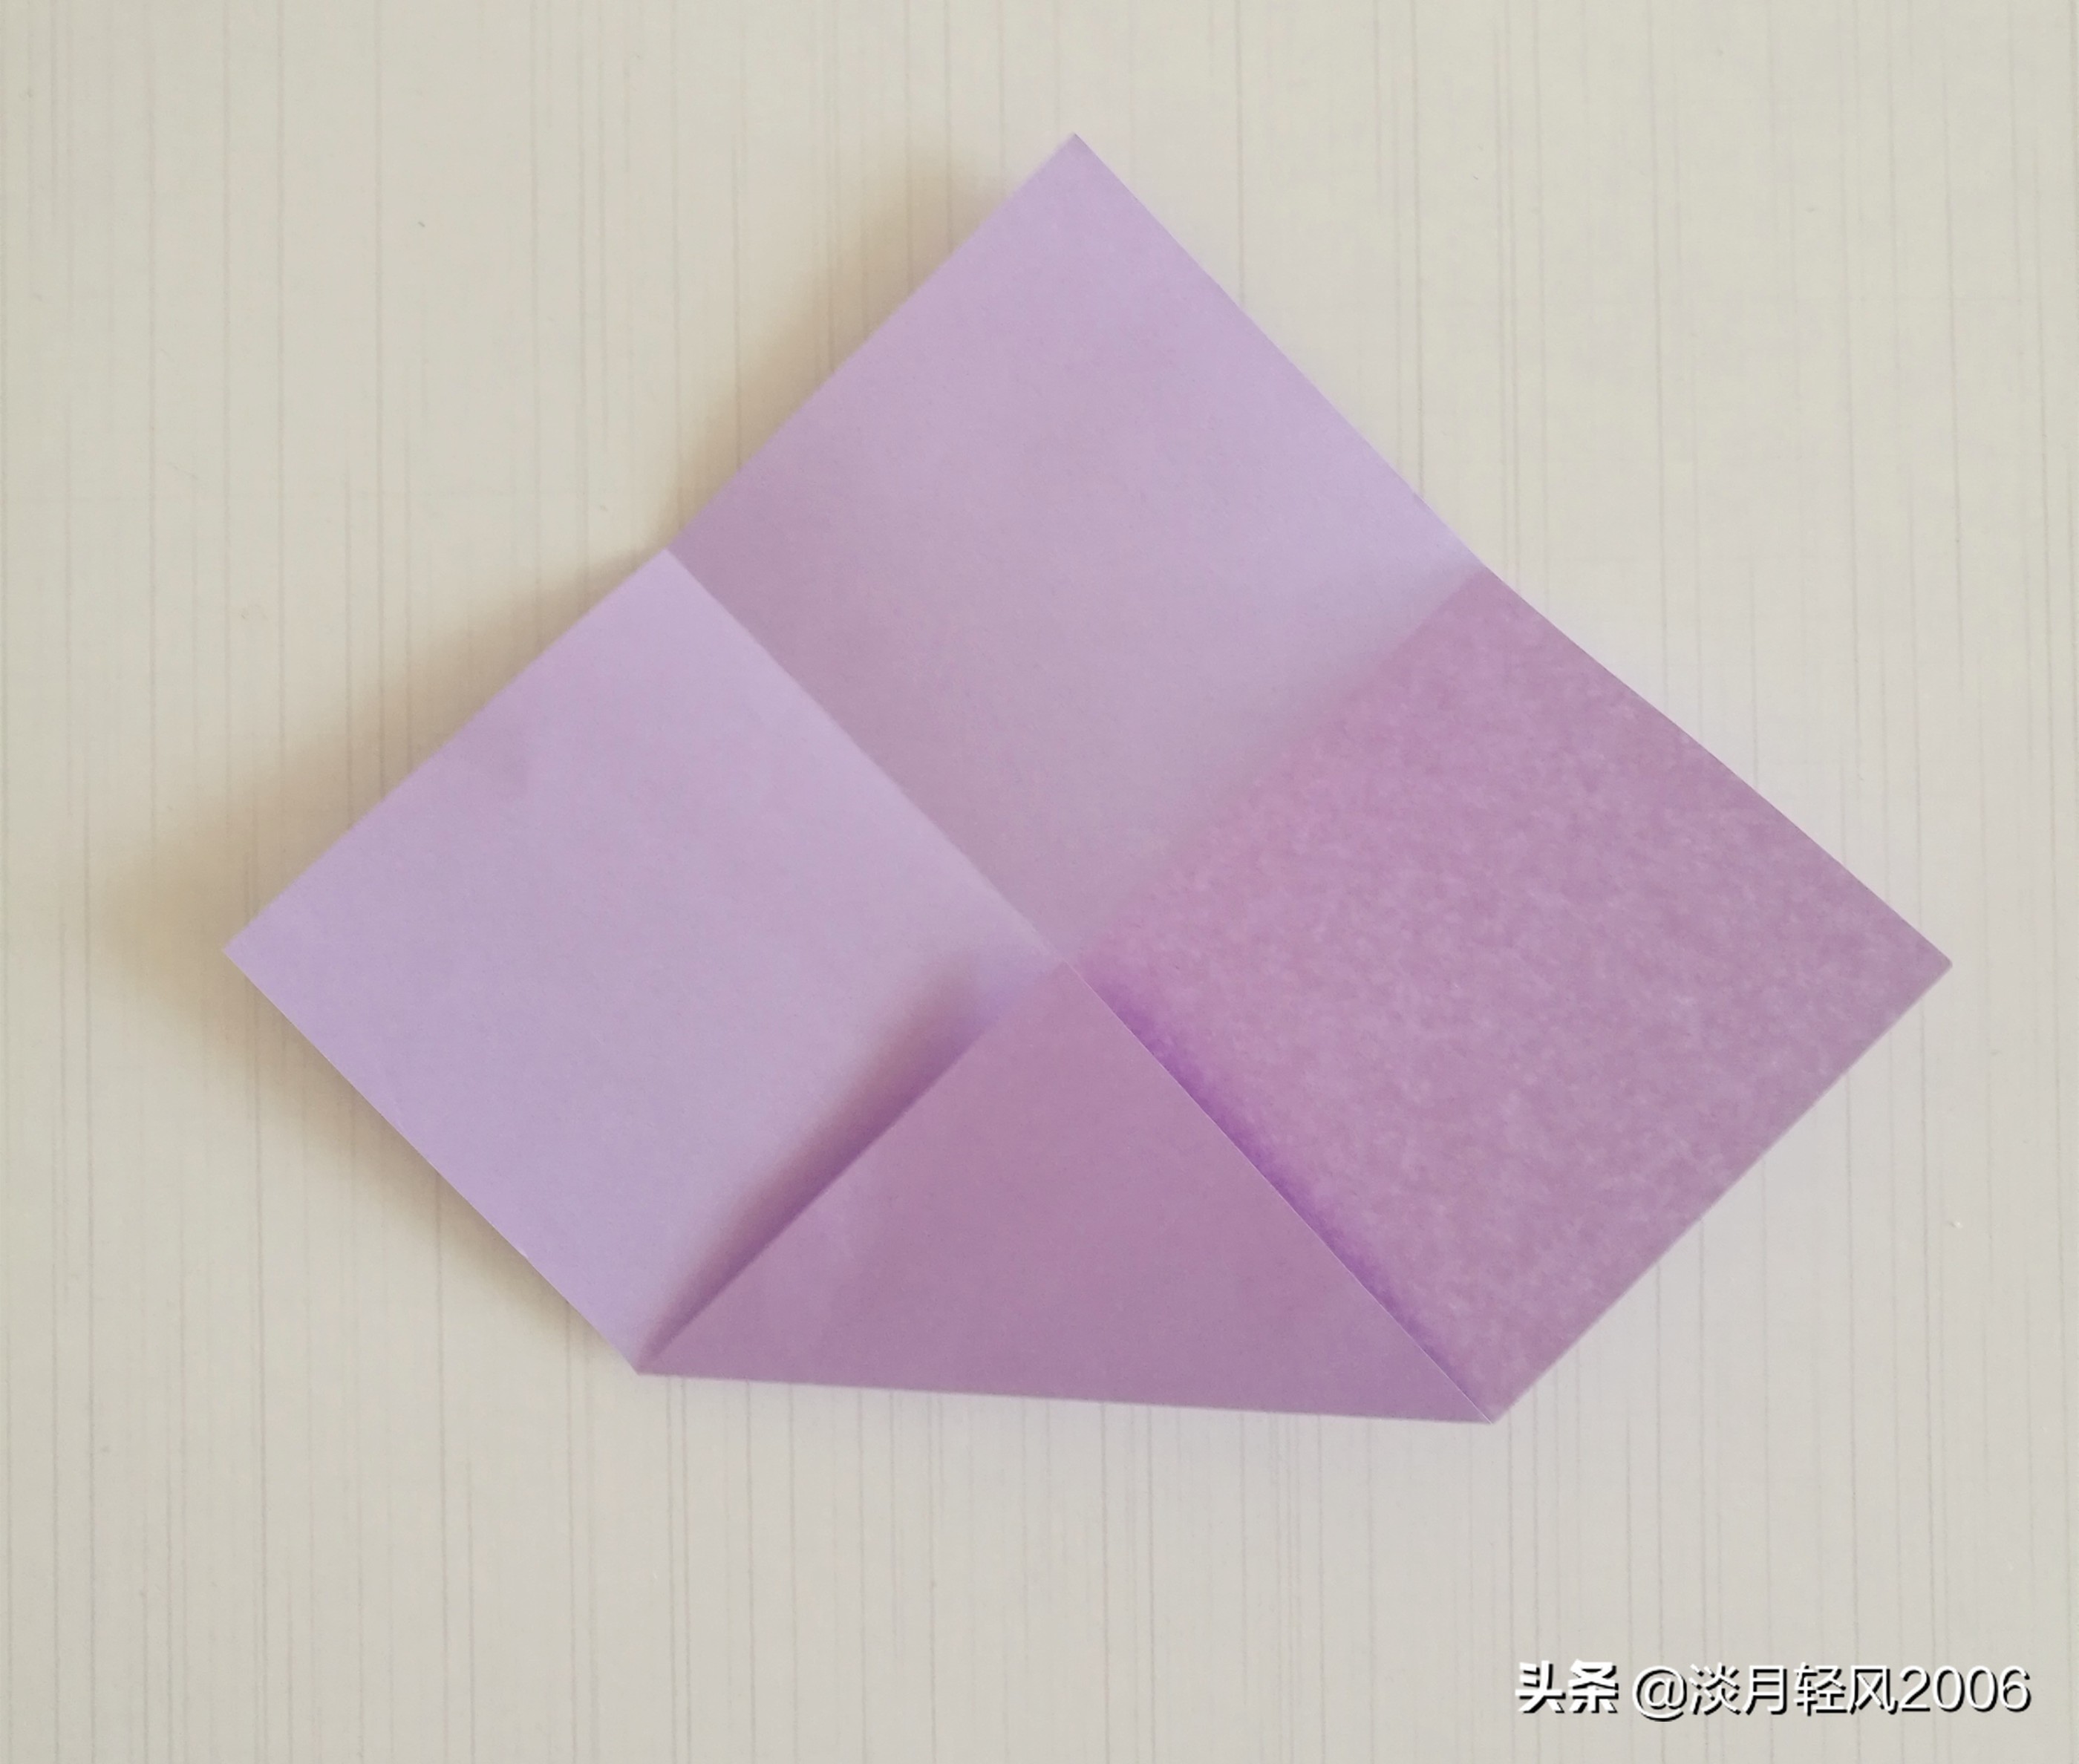 用一张纸折几下两分钟做一个小盒子，很实用的小手工，有制作过程